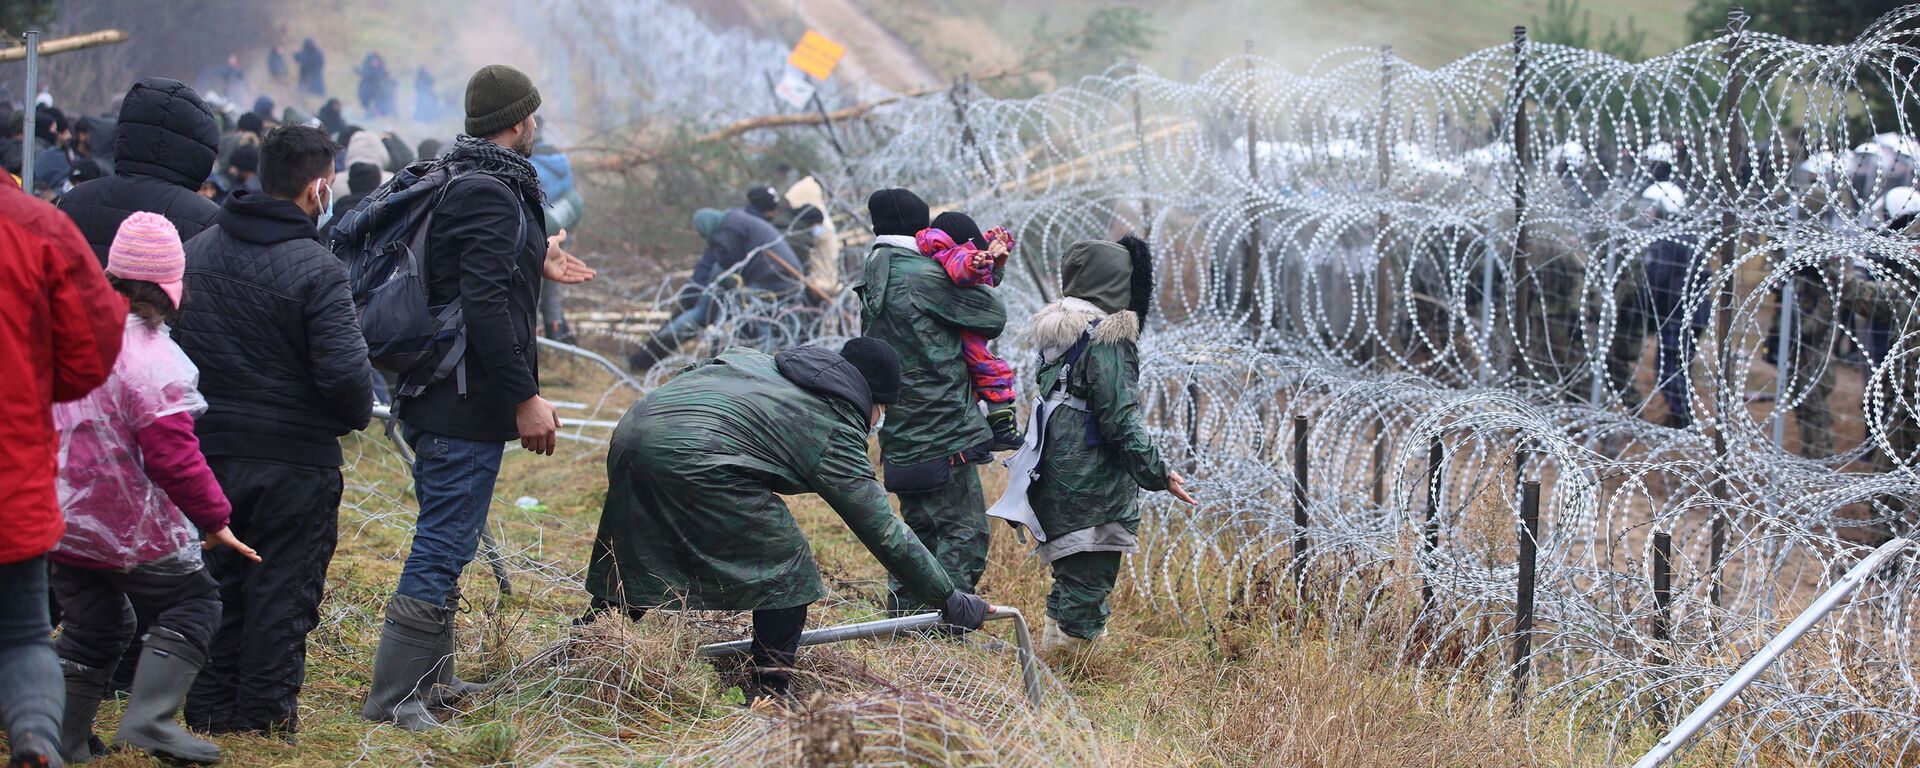 Migrantes se reúnem junto de cerca de arame farpado, com guardas fronteiriços poloneses do outro lado, para tentar cruzar a fronteira com a Polônia na região de Grodno, Belarus, 8 de novembro de 2021 - Sputnik Brasil, 1920, 08.11.2021